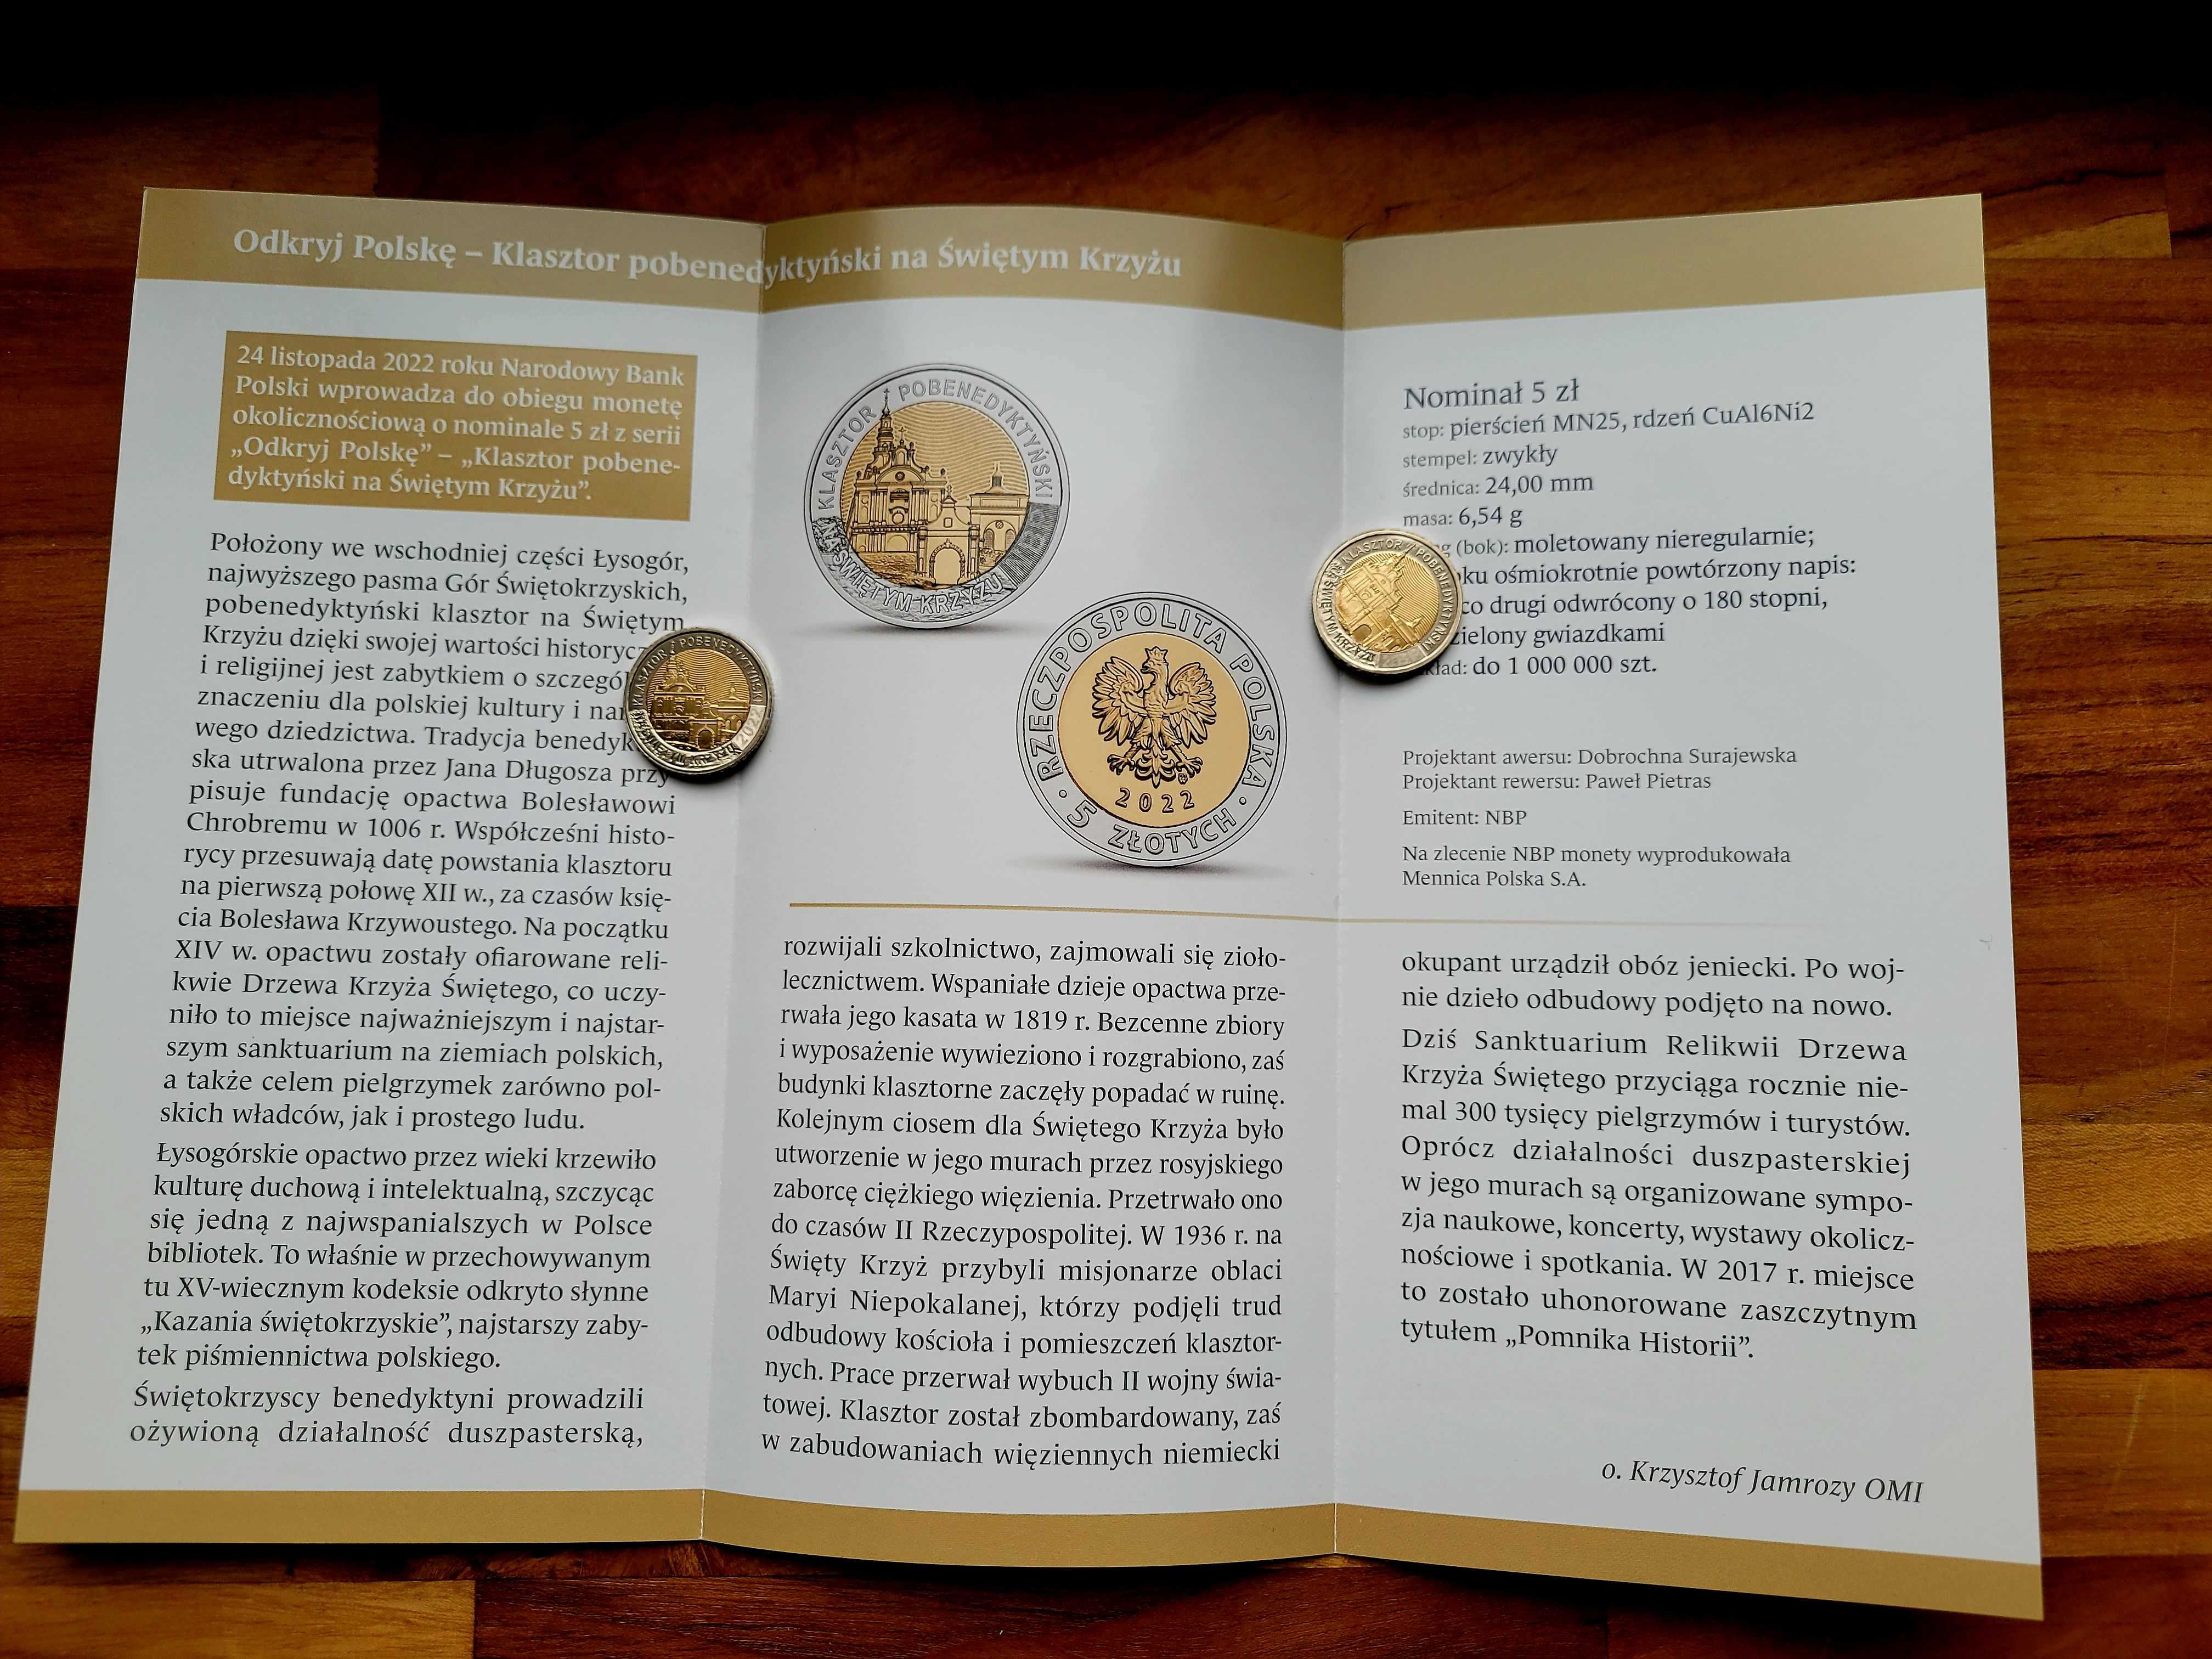 Moneta 5 ZŁ Klasztor pobenedyktyński na Świętym Krzyżu z folderem